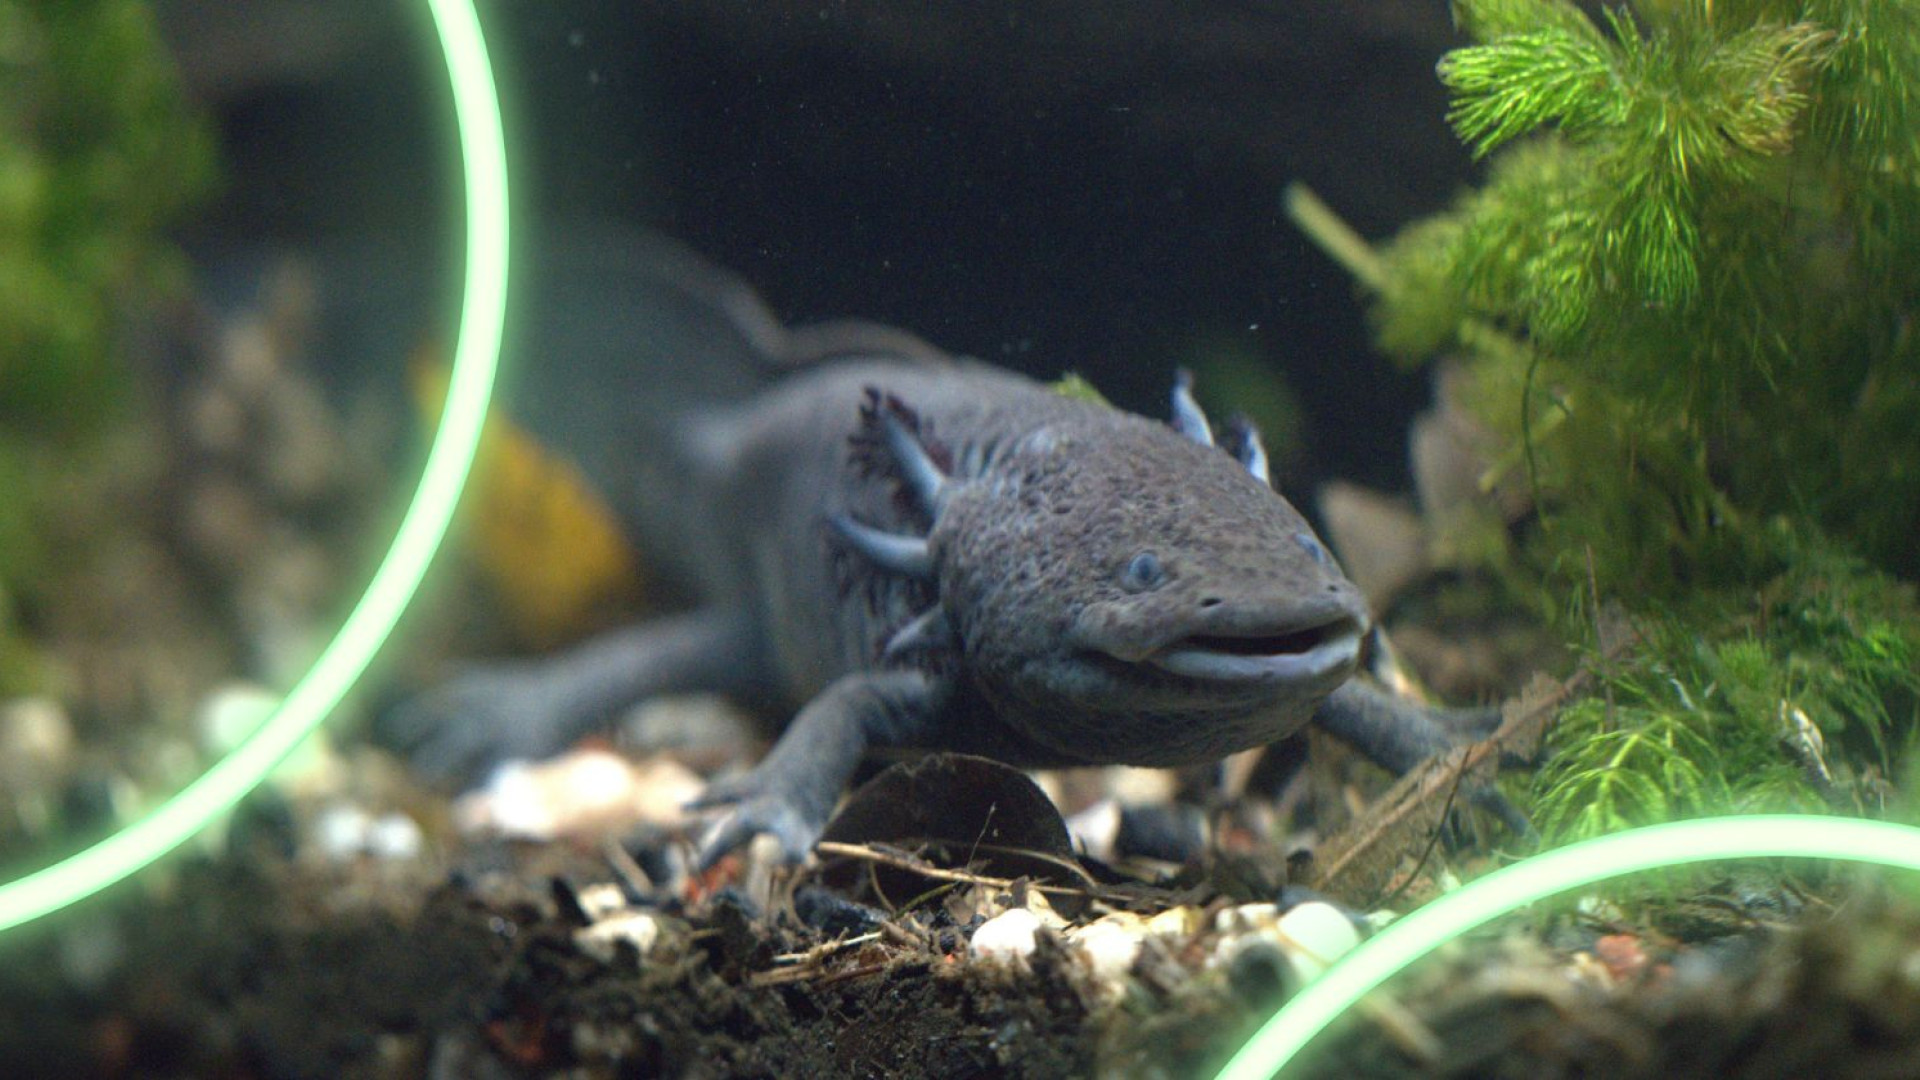 Wild Hope for Salamanders